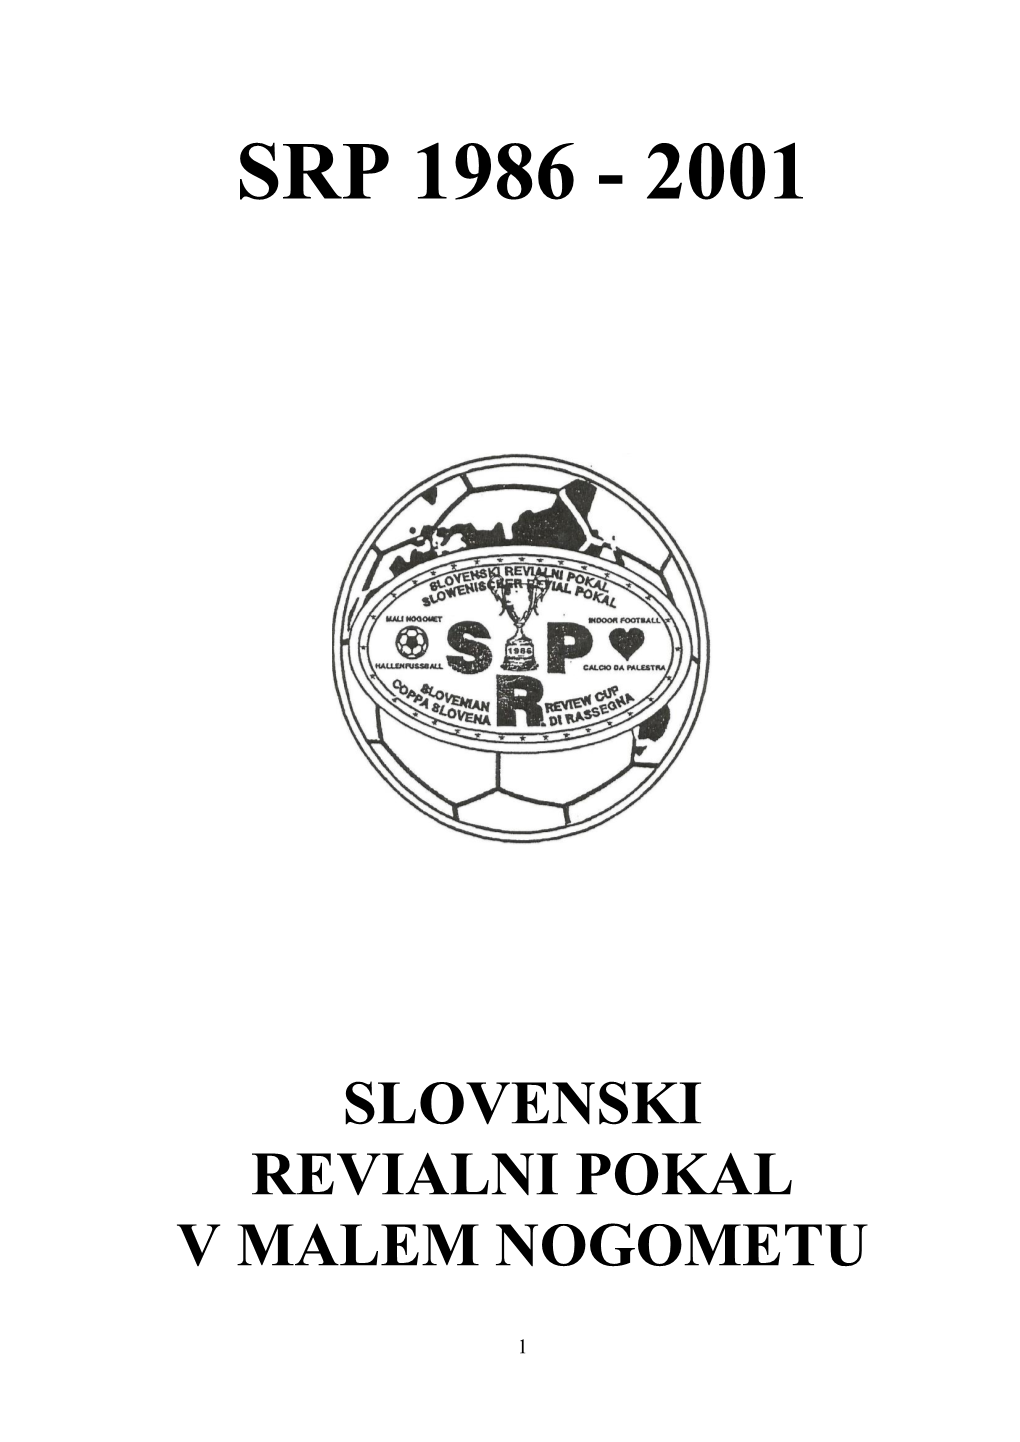 Slovenski Revialni Pokal – Srp V Malem Nogometu 28.2.1986 – 22.12.2001